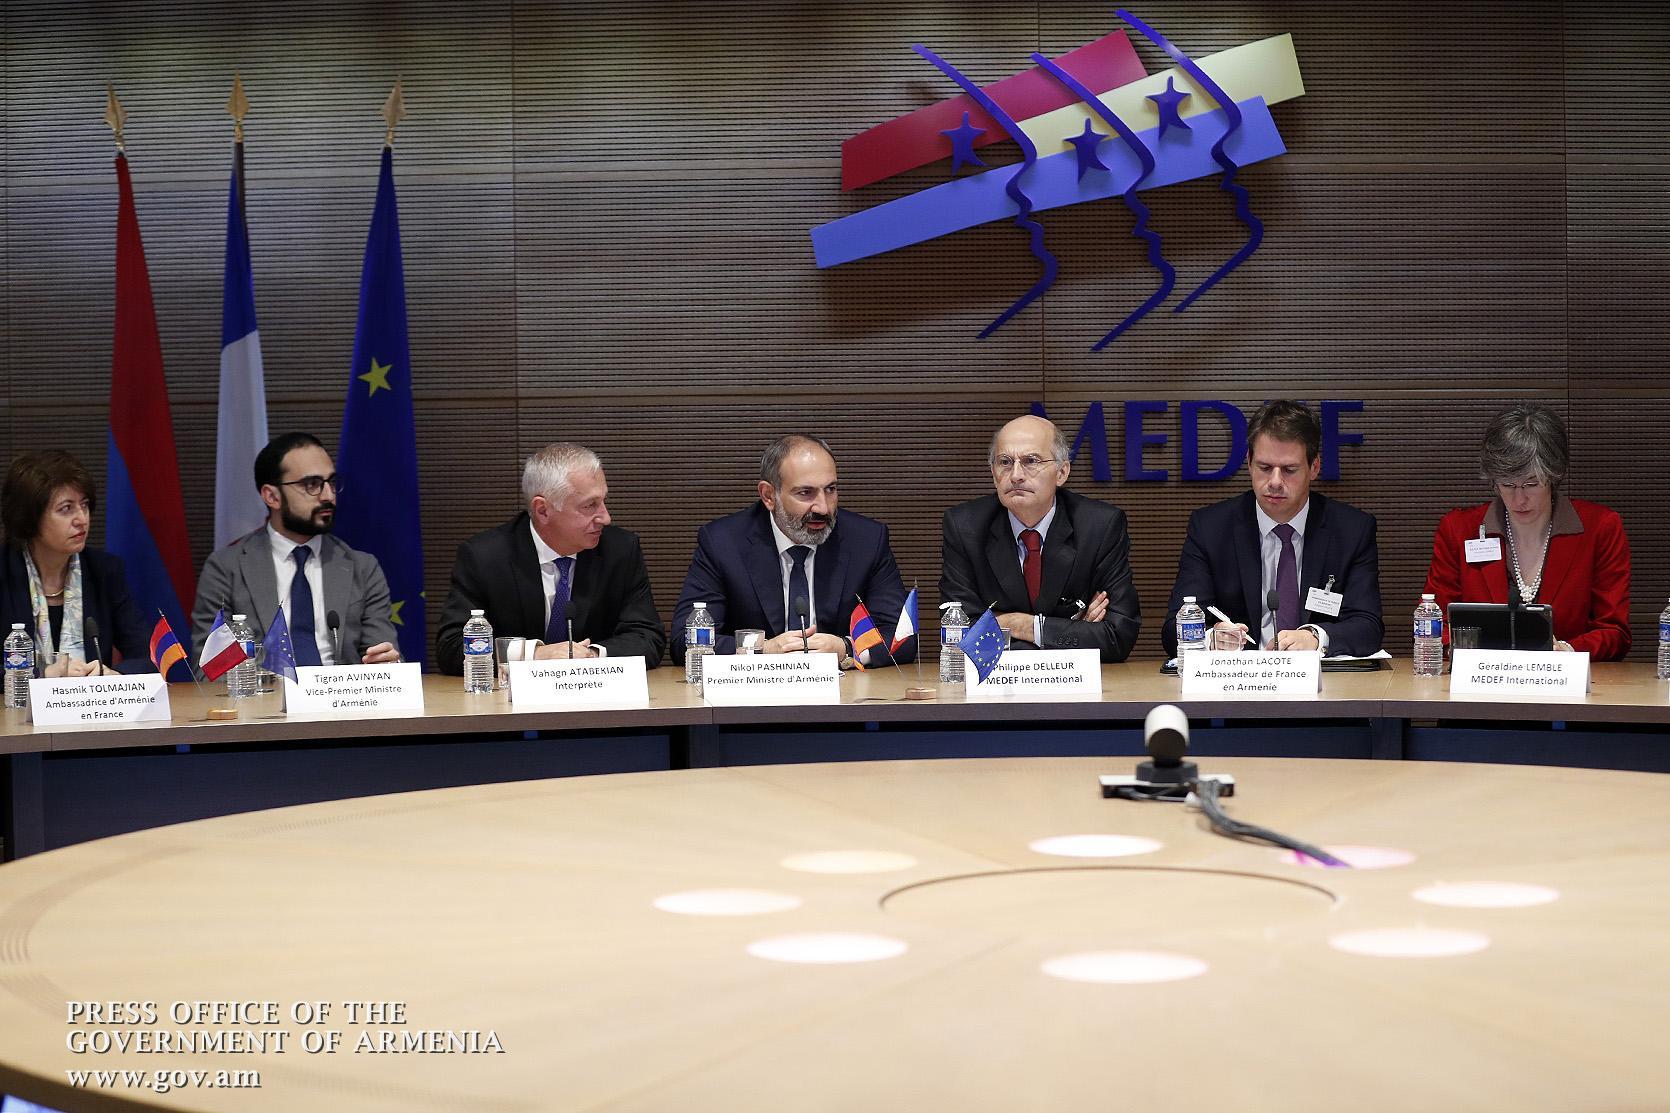 Pachinian au MEDEF: “L’Arménie se prépare à un envol”